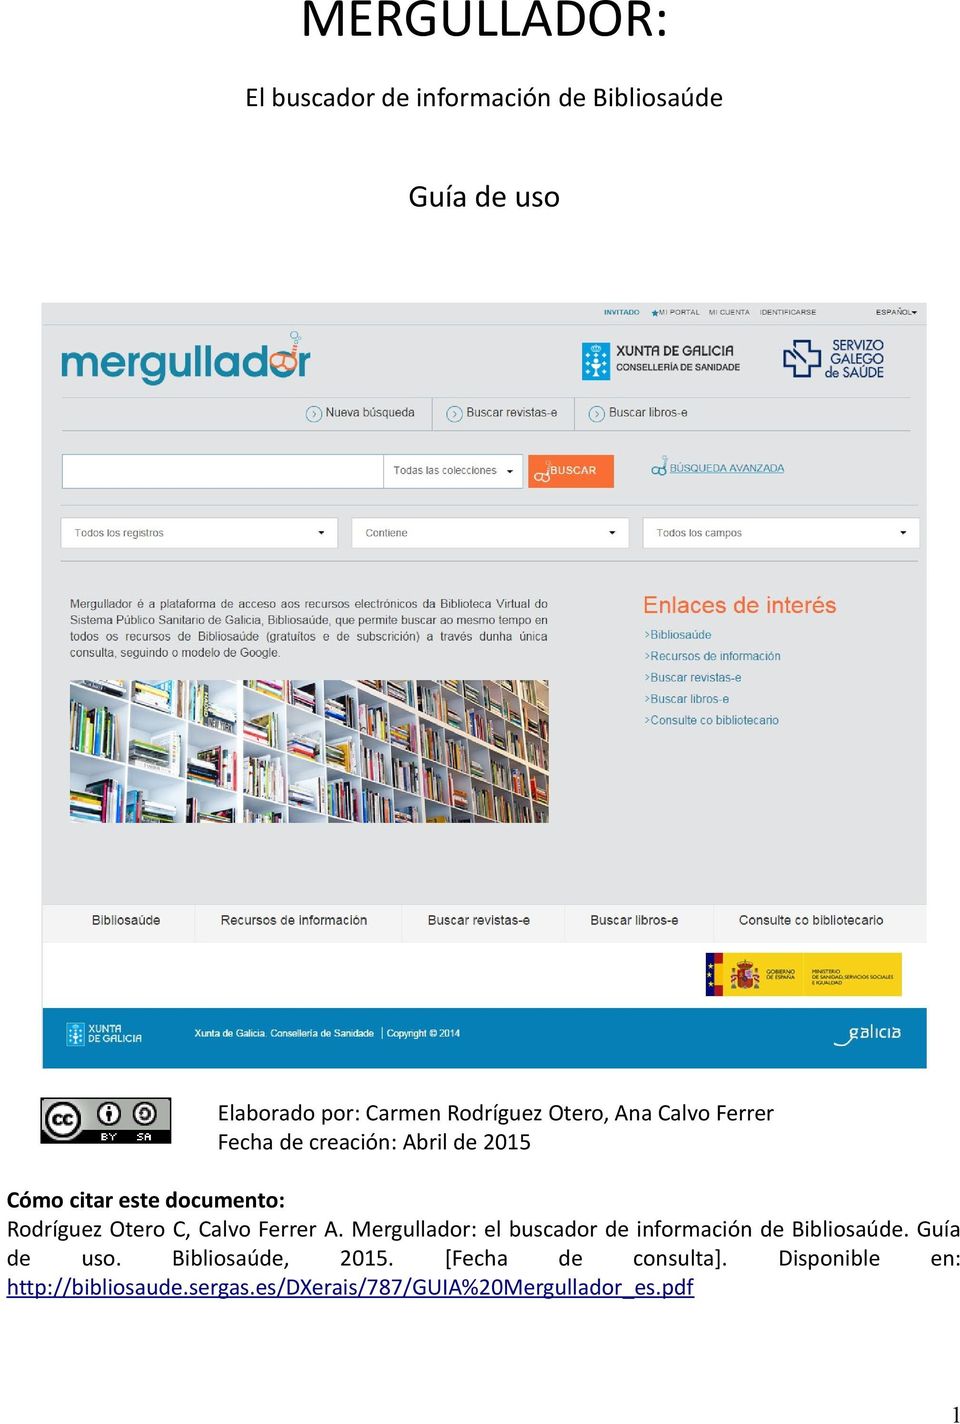 Calvo Ferrer A. Mergullador: el buscador de información de Bibliosaúde. Guía de uso. Bibliosaúde, 2015.